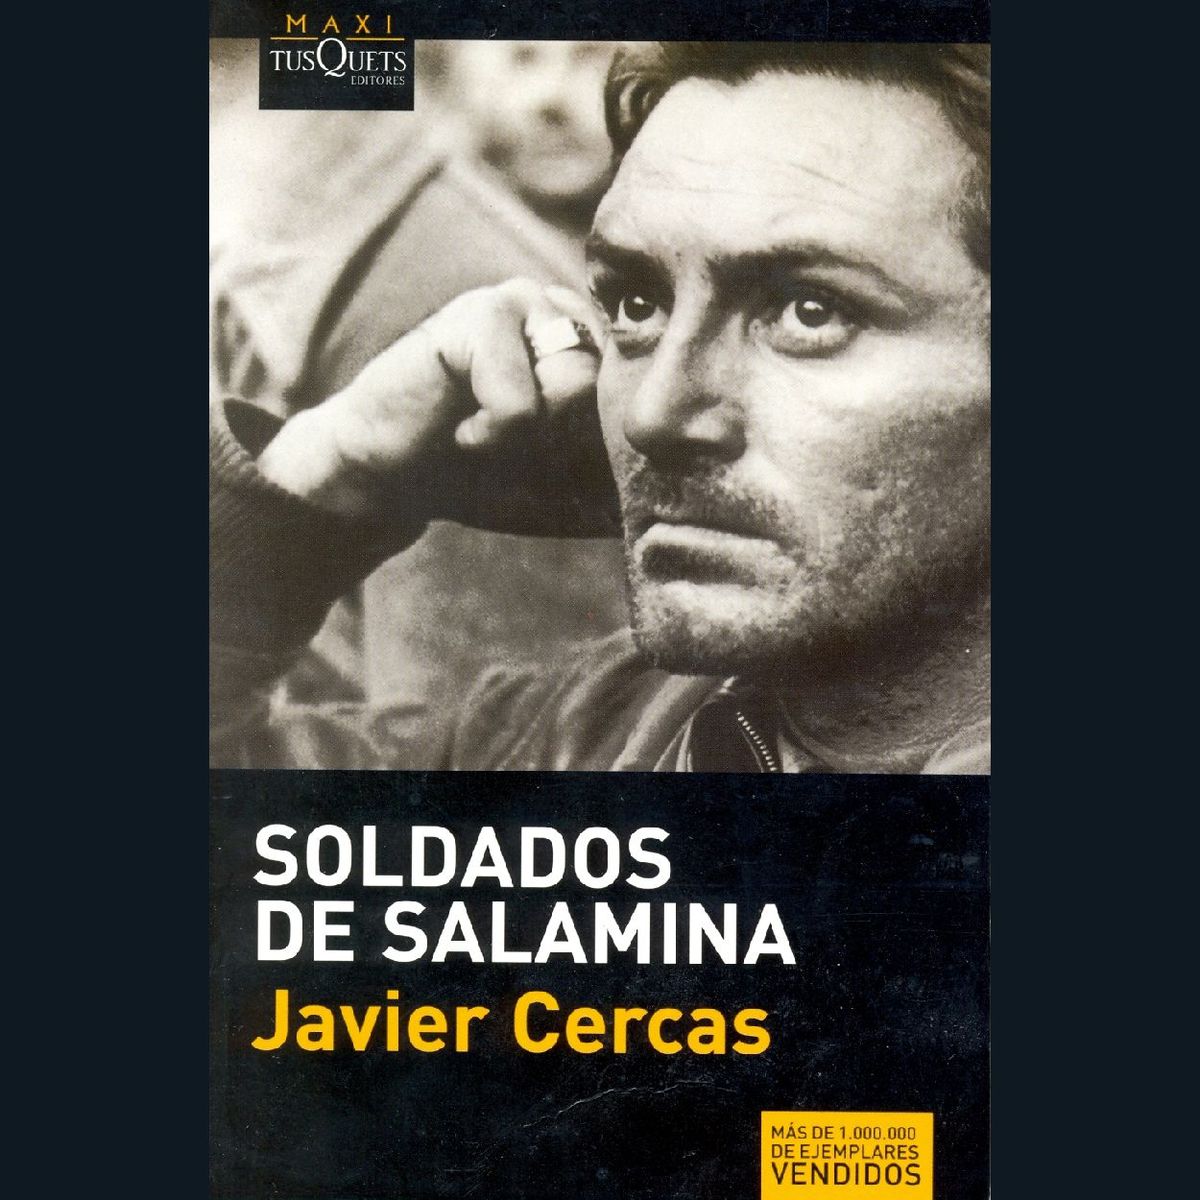 Soldaten von Salamina, von Javier Cercas, Zusammenfassung und Kommentare